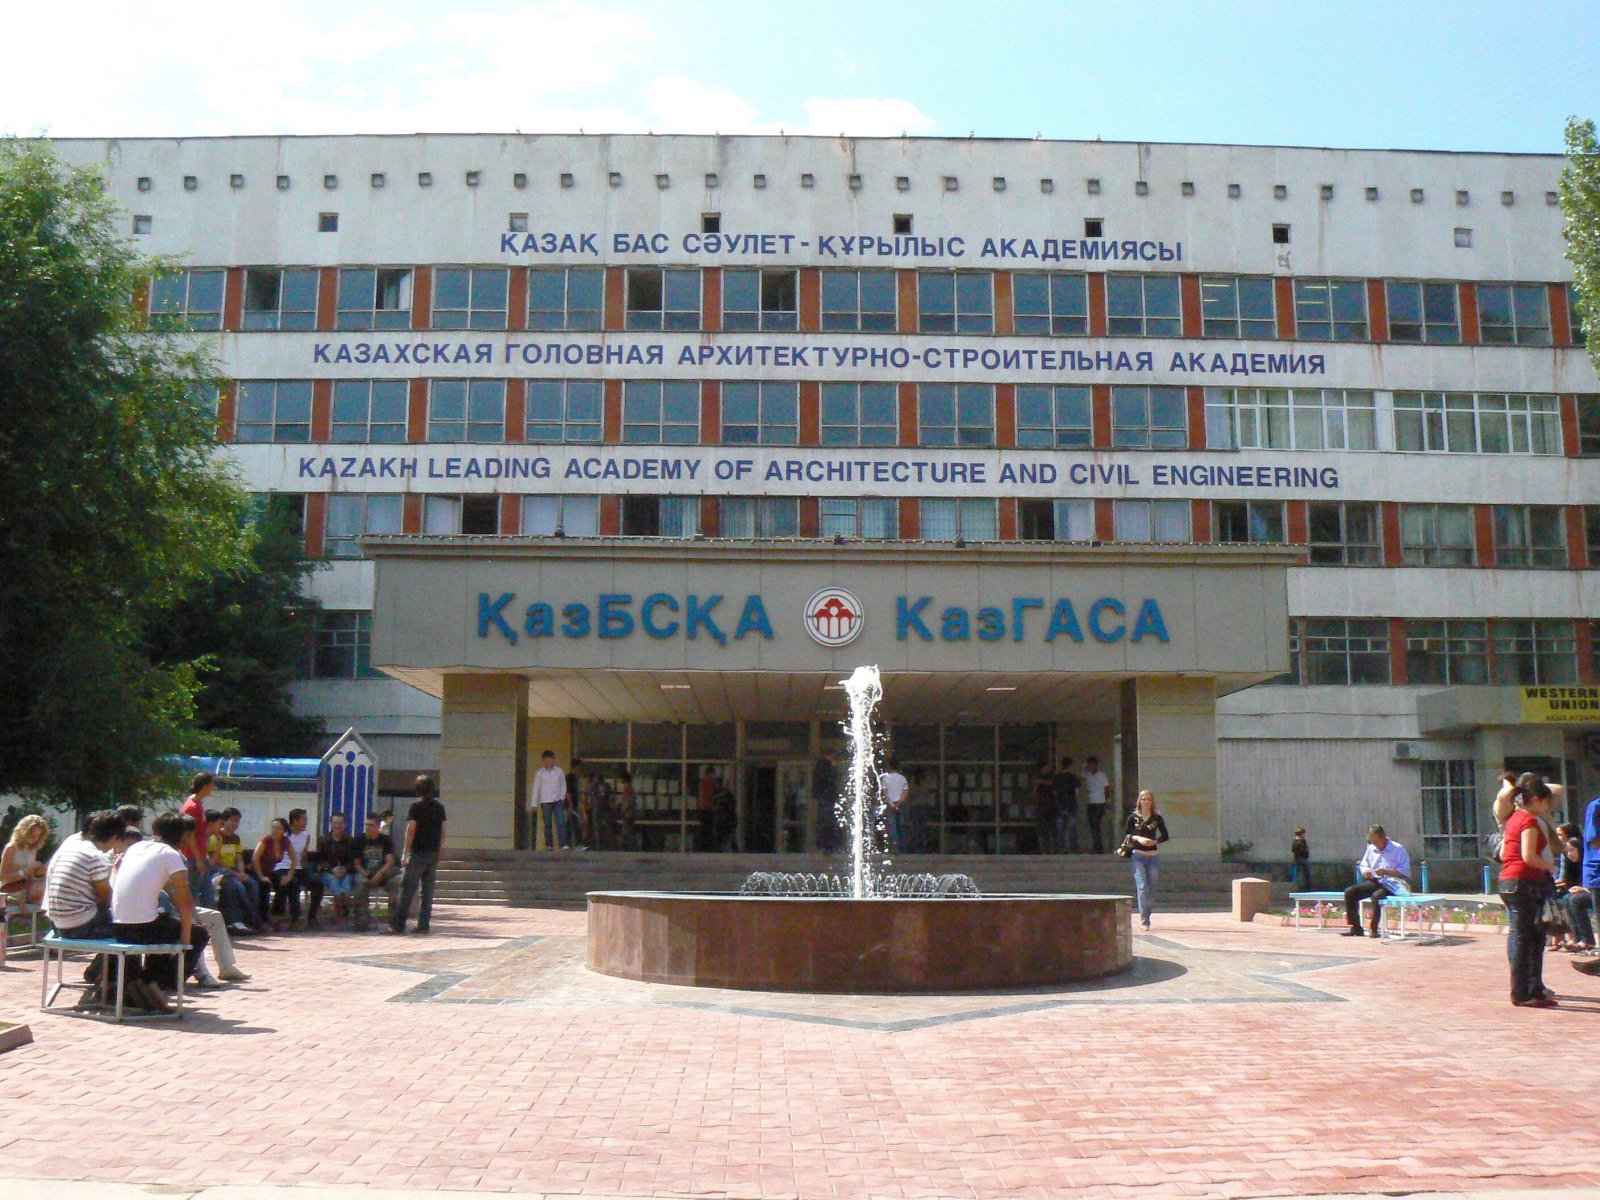 Колледж при КазГАСА - Казахский головной архитектурно-строительной академии